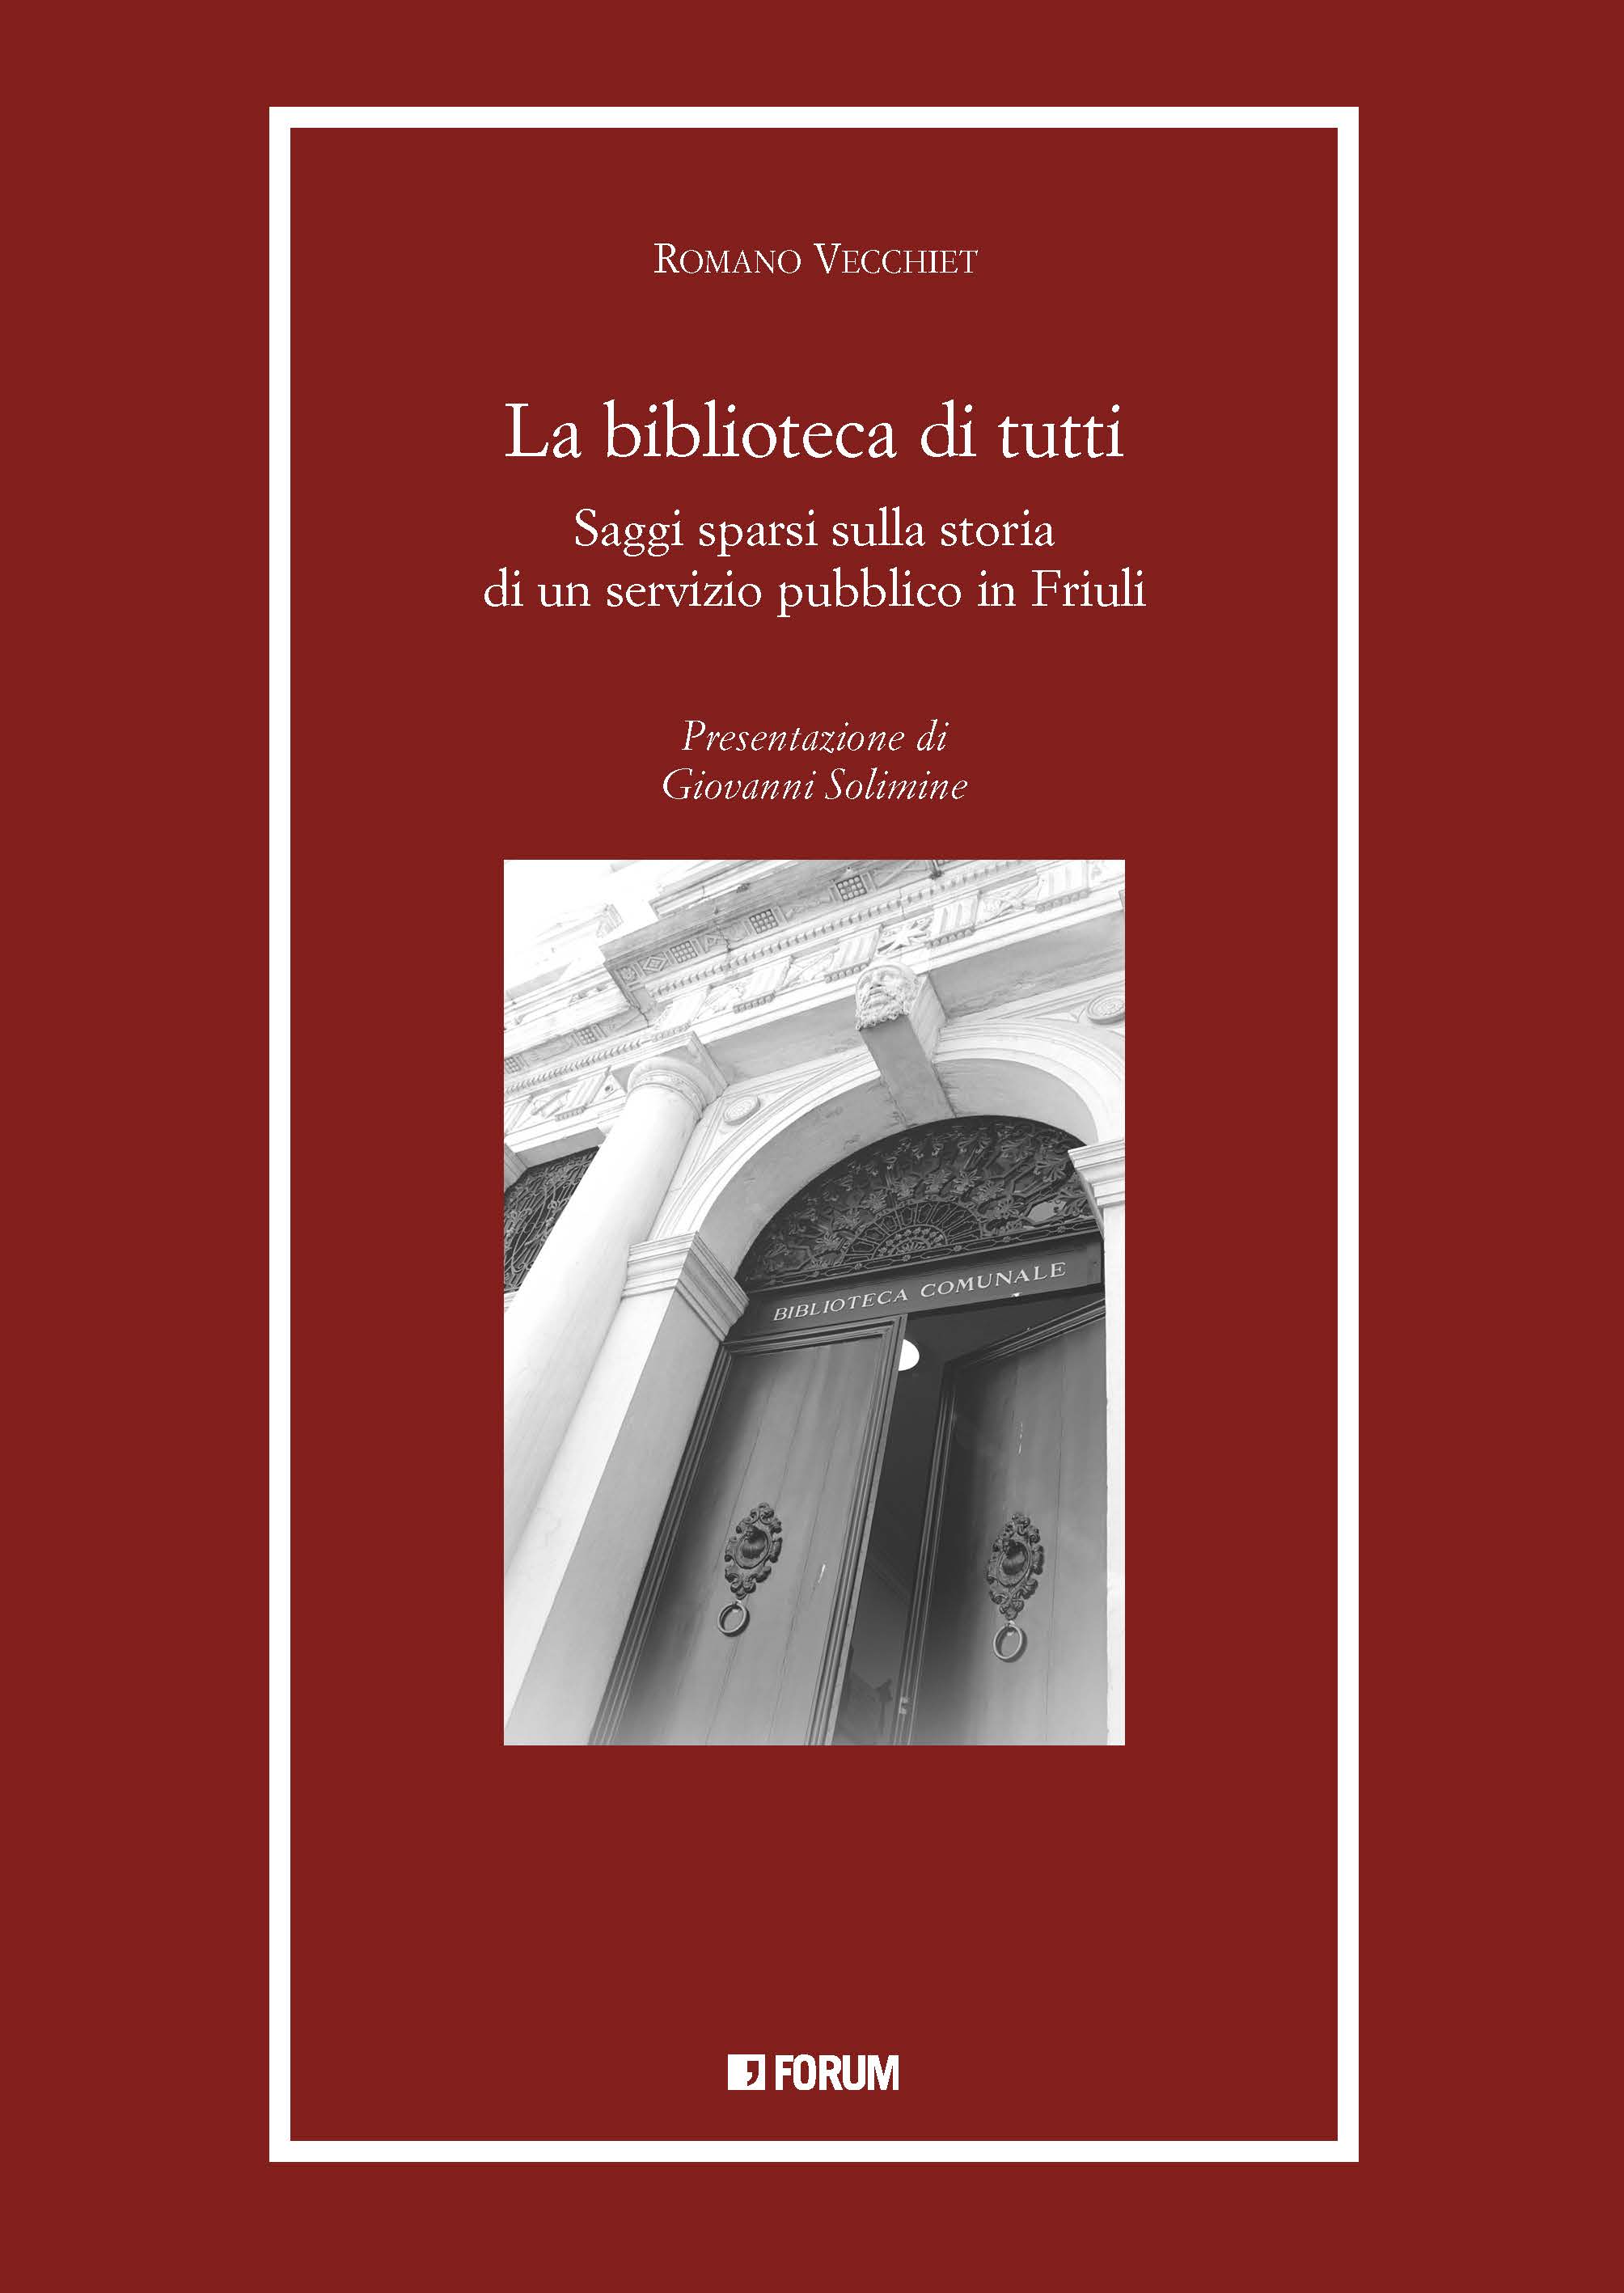 Il libro La biblioteca di tutti di Romano Vecchiet sarà presentato domani alle 18.00 alla Joppi di Udine